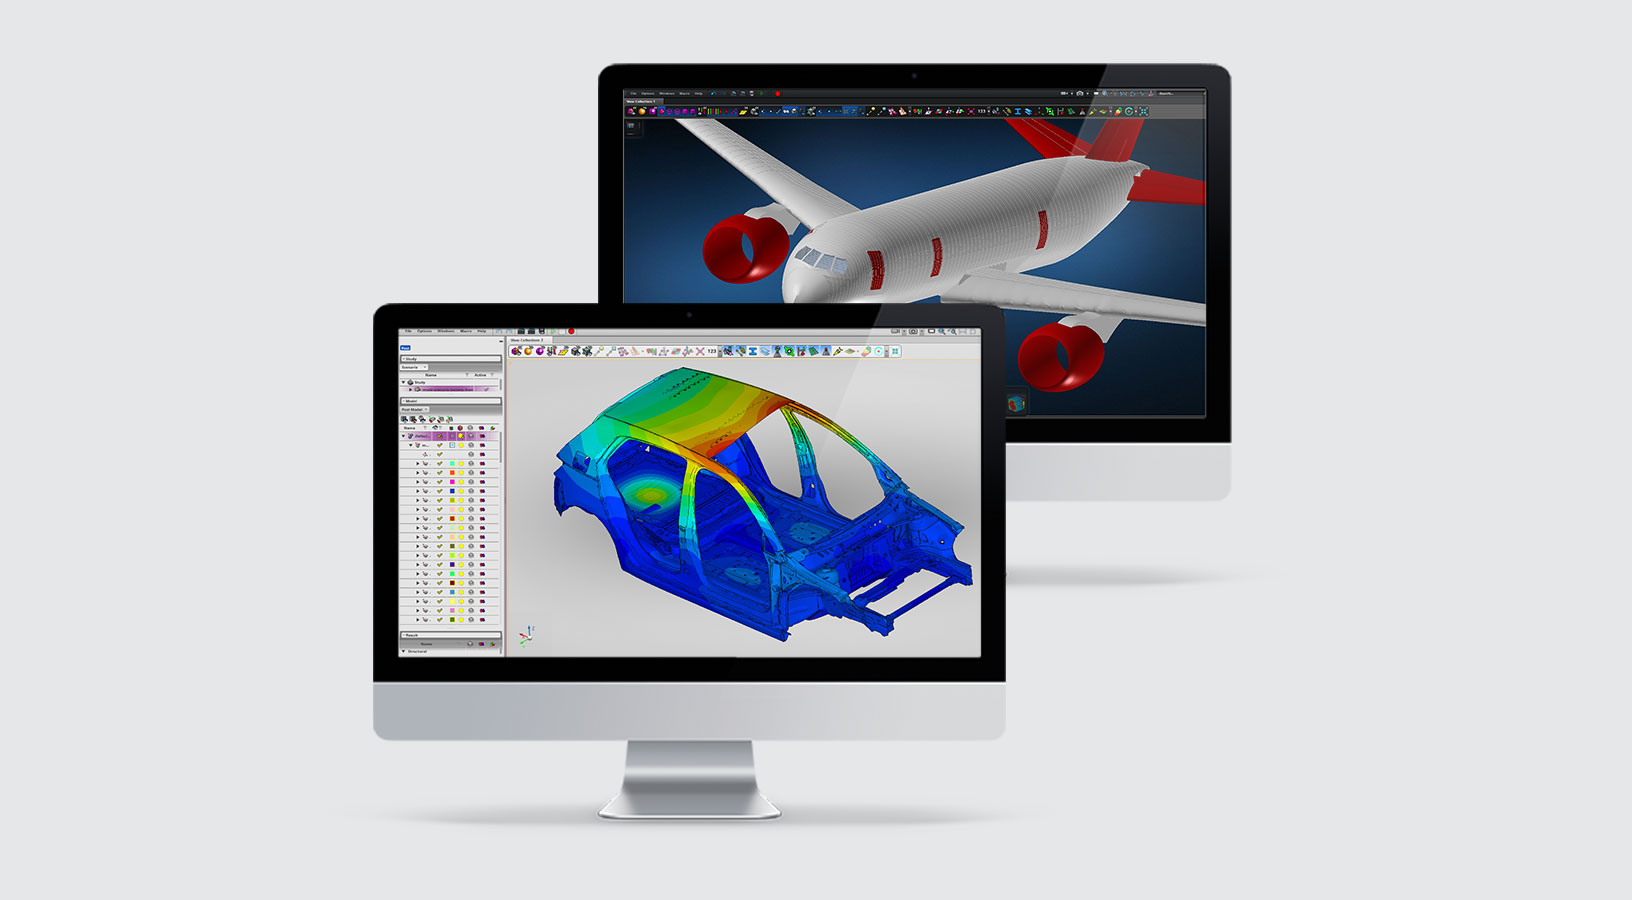 Simulazione CAE in MSC Apex che mostra le applicazioni di analisi strutturale nel settore automobilistico e aerospaziale